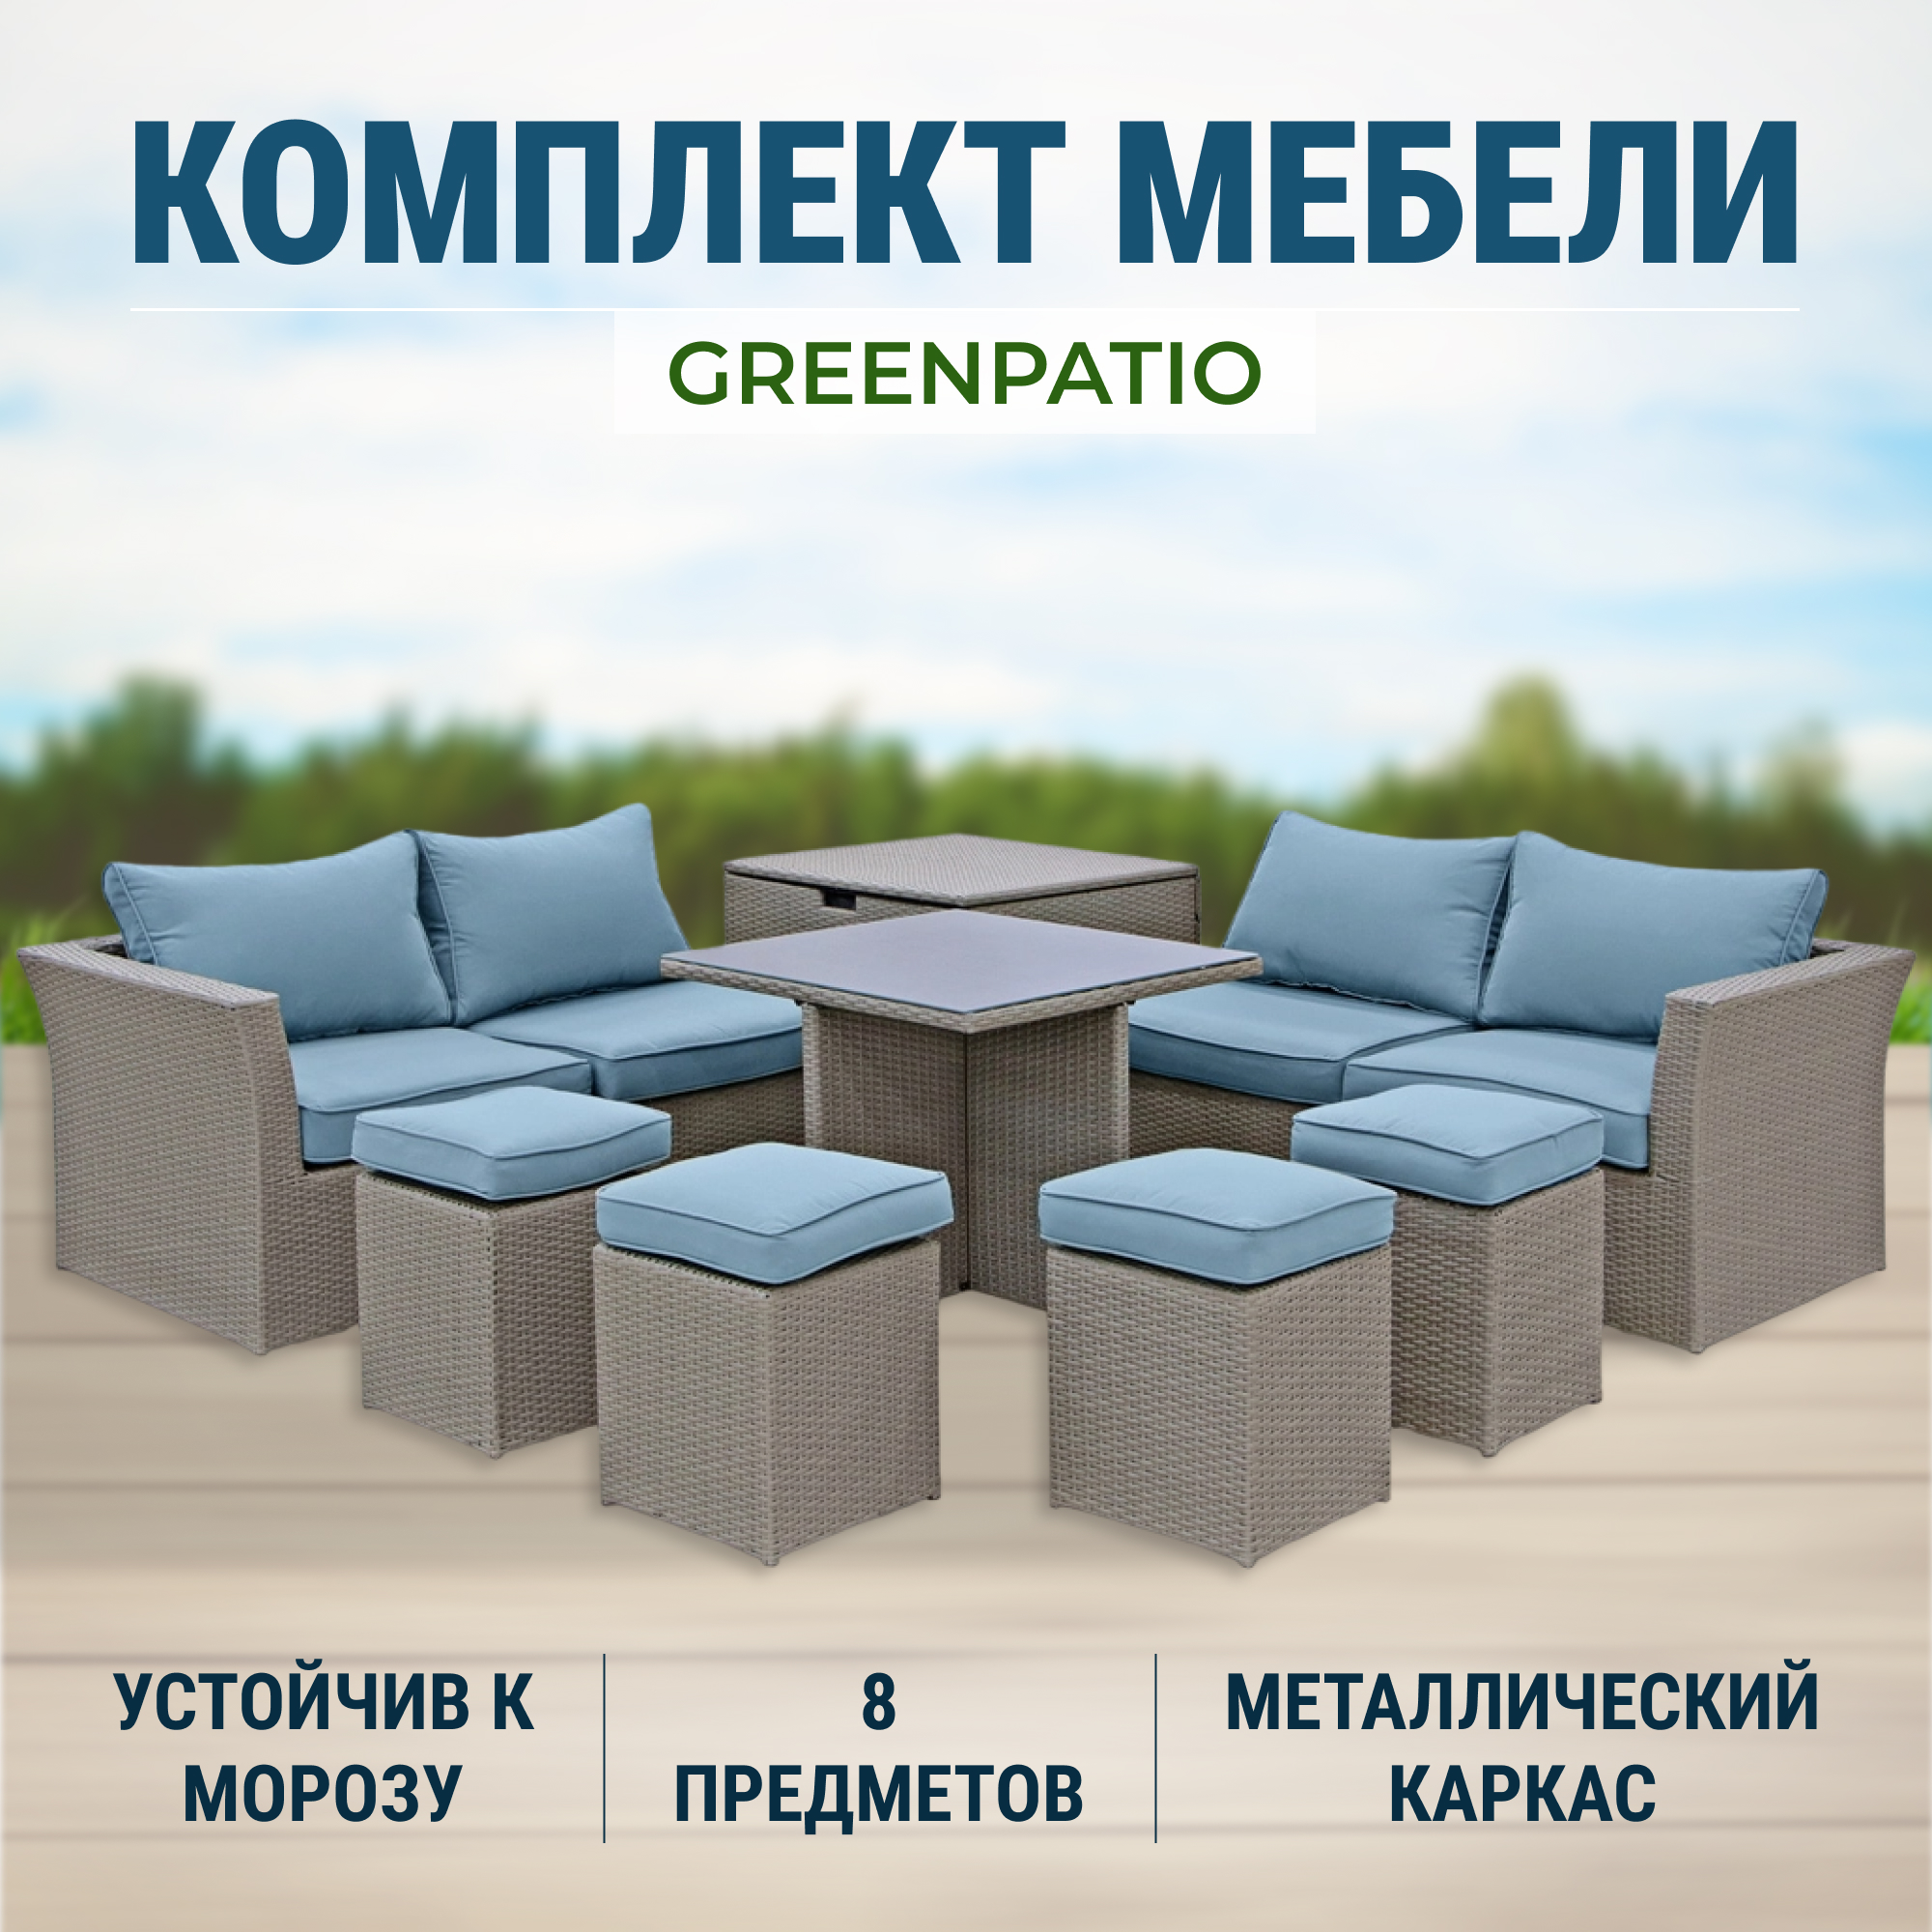 Комплект мебели Greenpatio 8 предметов серый, цвет голубой, размер 145х80х64 см - фото 2